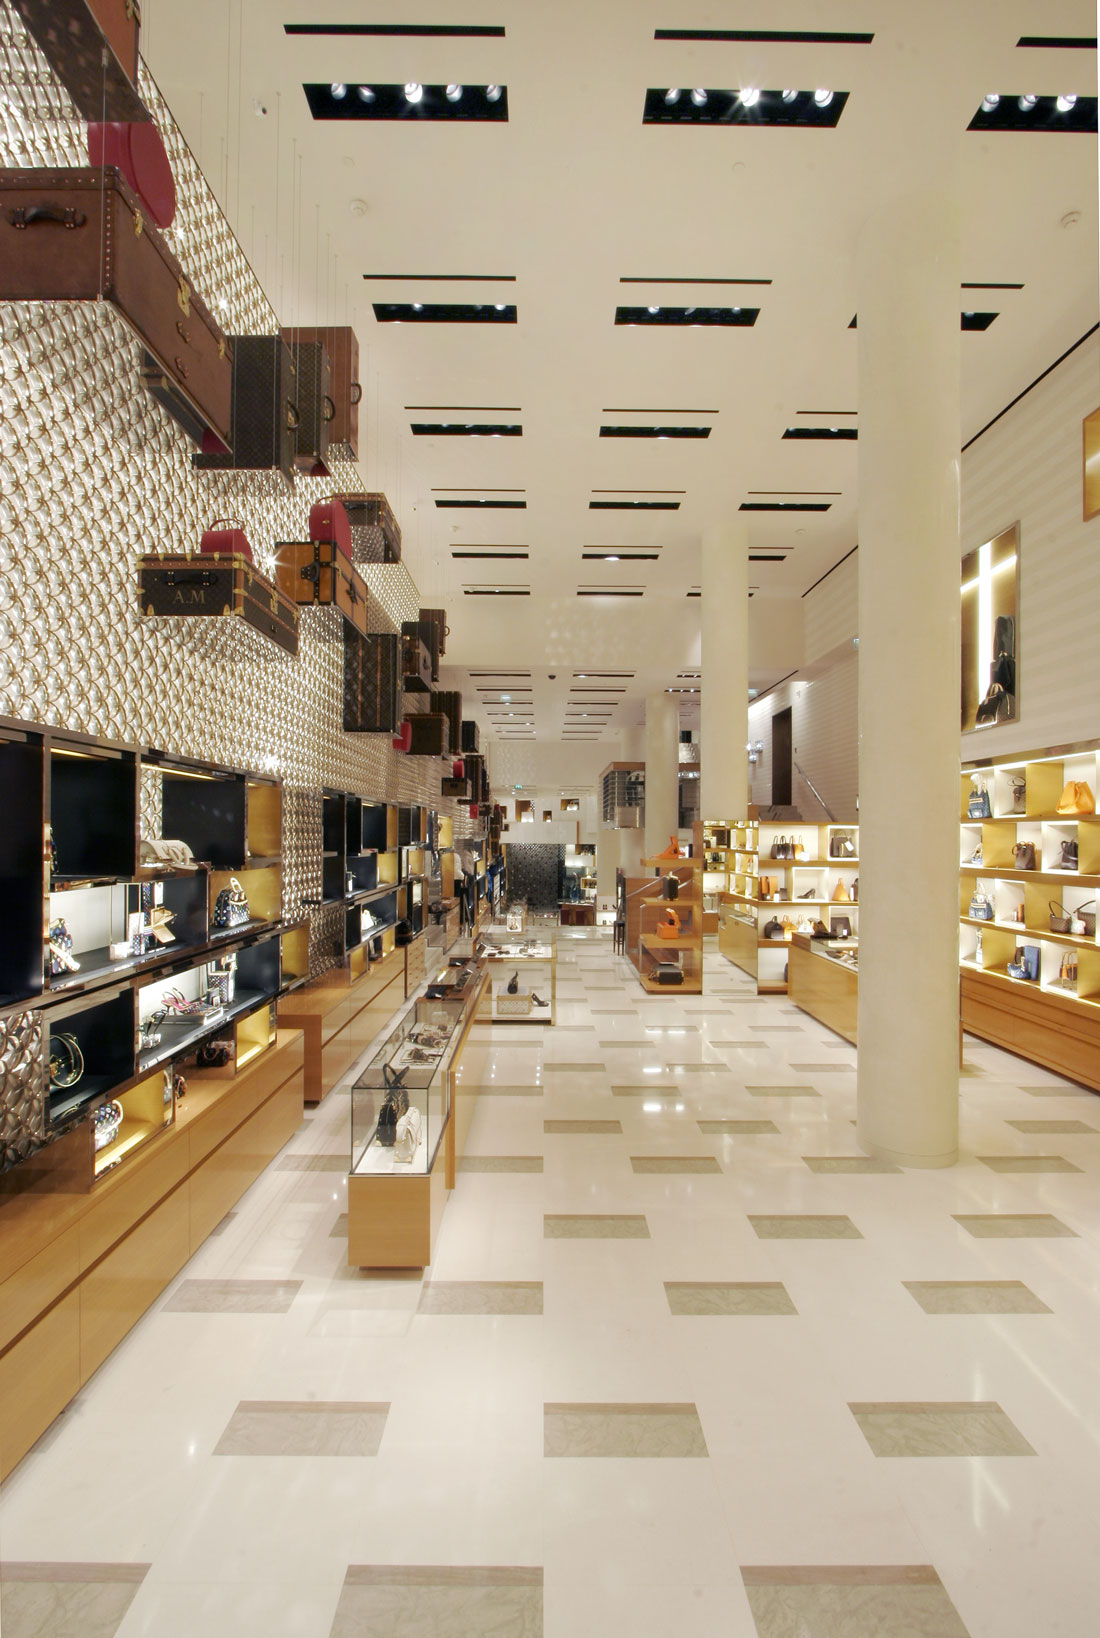 Louis Vuitton Maison Champs-Élysées store, France